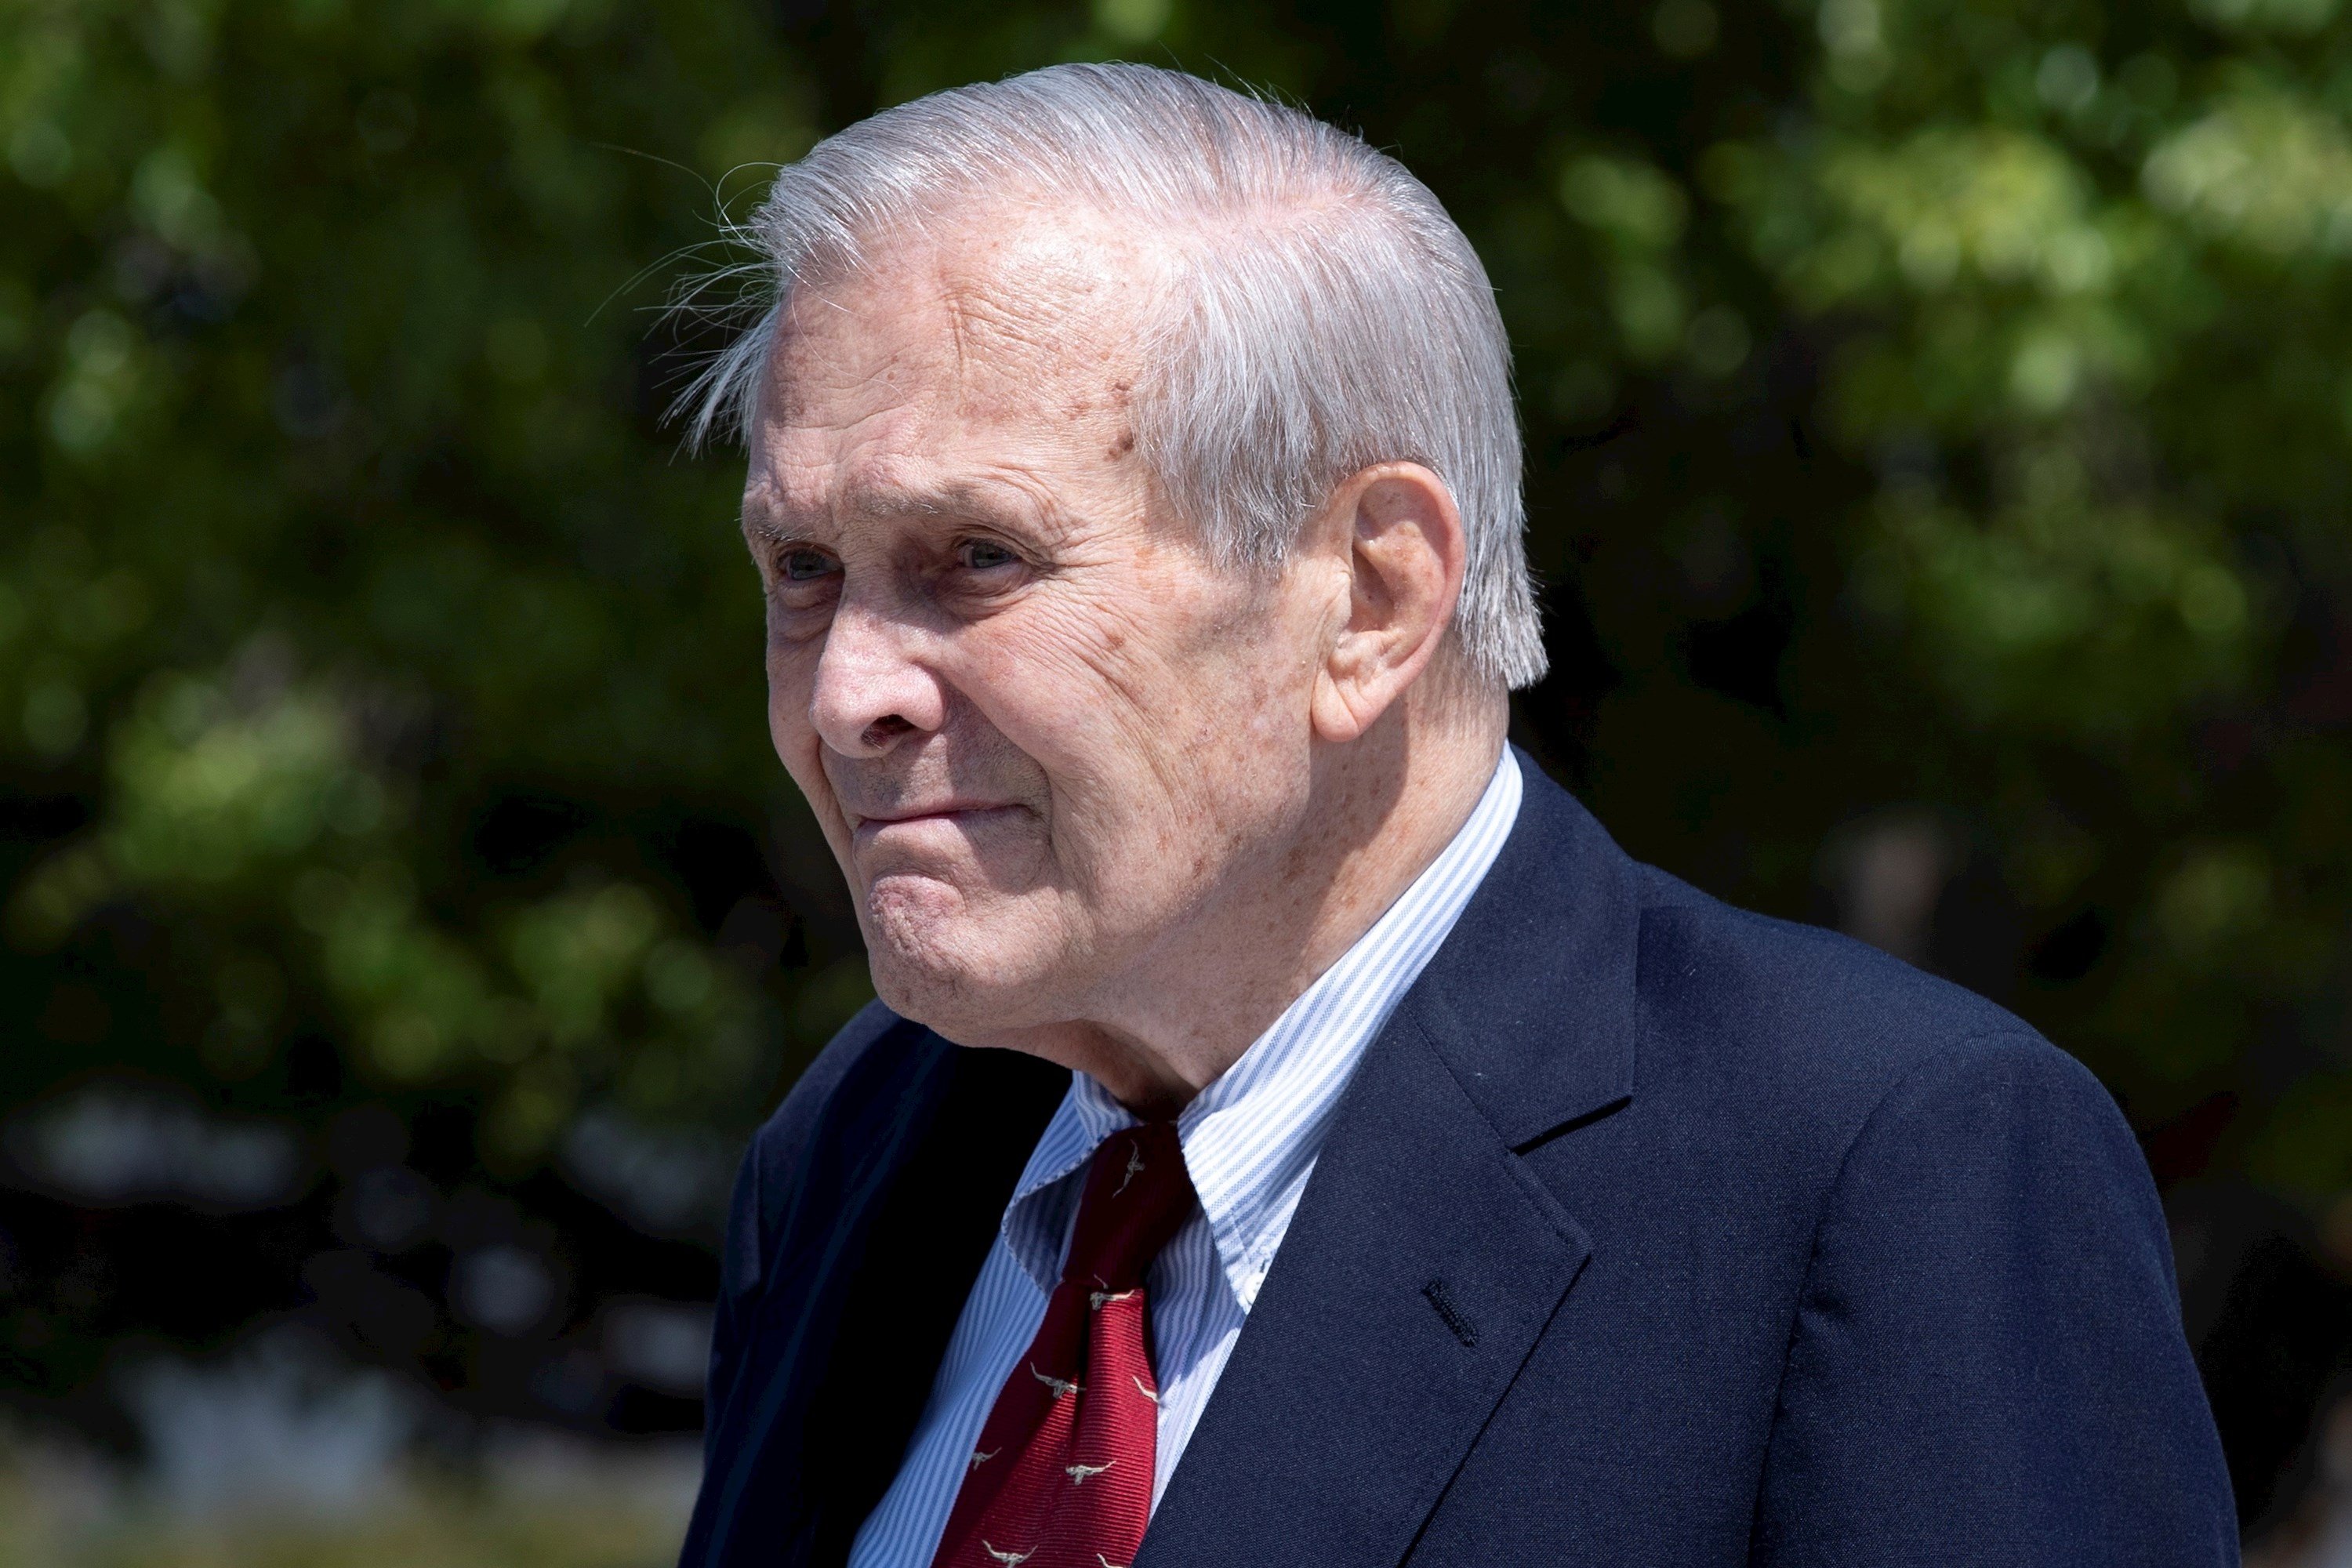 Mor als 88 anys Donald Rumsfeld, exsecretari de Defensa dels EUA